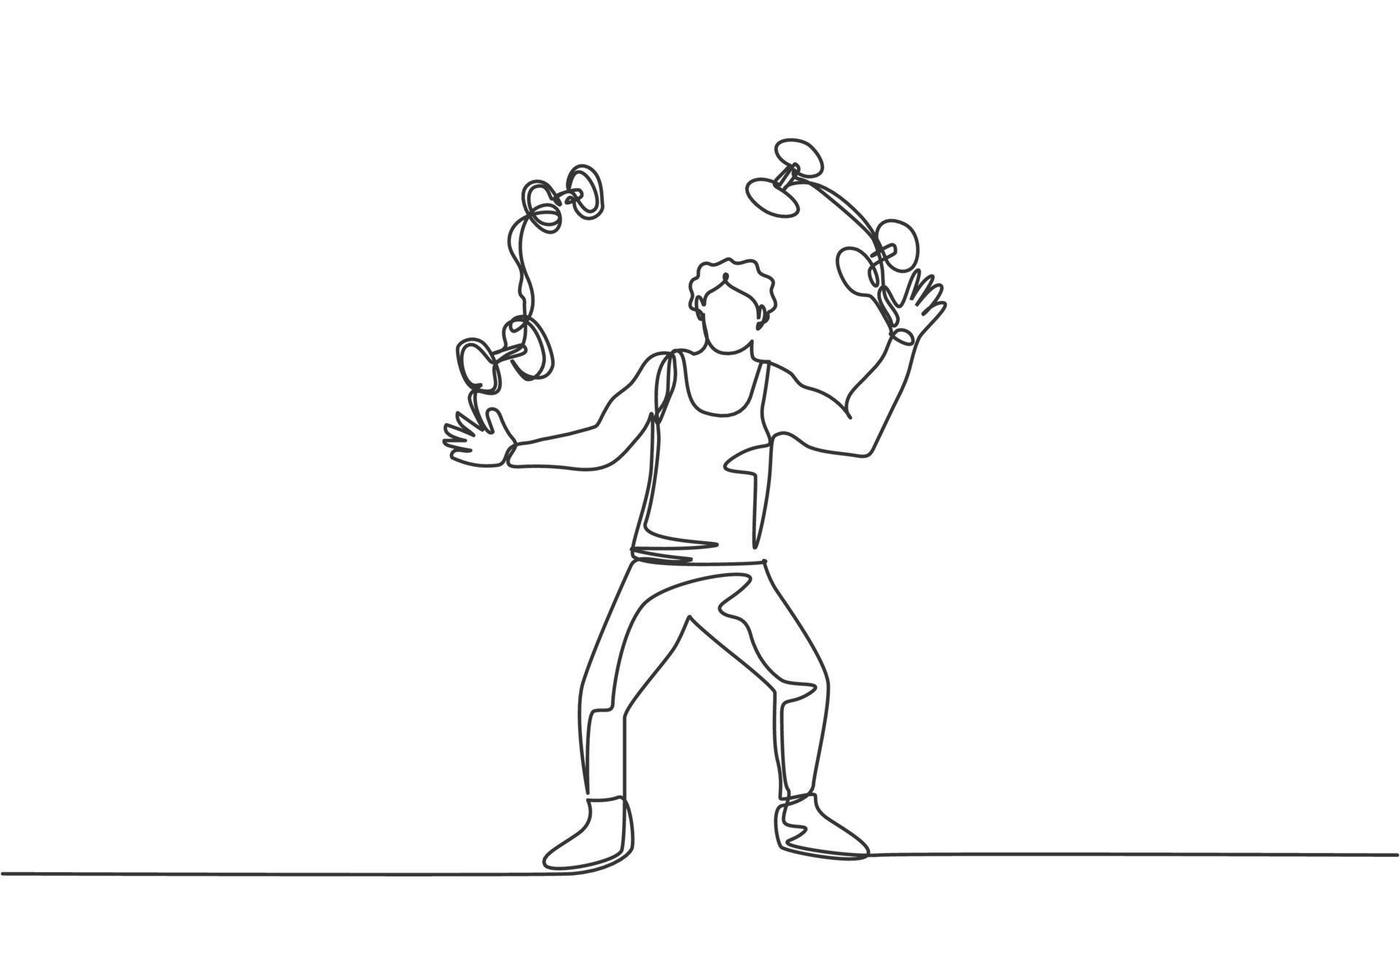 eine einzelne Linie, die einen Akrobaten zeichnet, der kleine Hanteln jongliert. Dieses Spiel erfordert Geschicklichkeit, Konzentration und ständige Übung. moderne durchgehende Linie zeichnen Design-Grafik-Vektor-Illustration. vektor